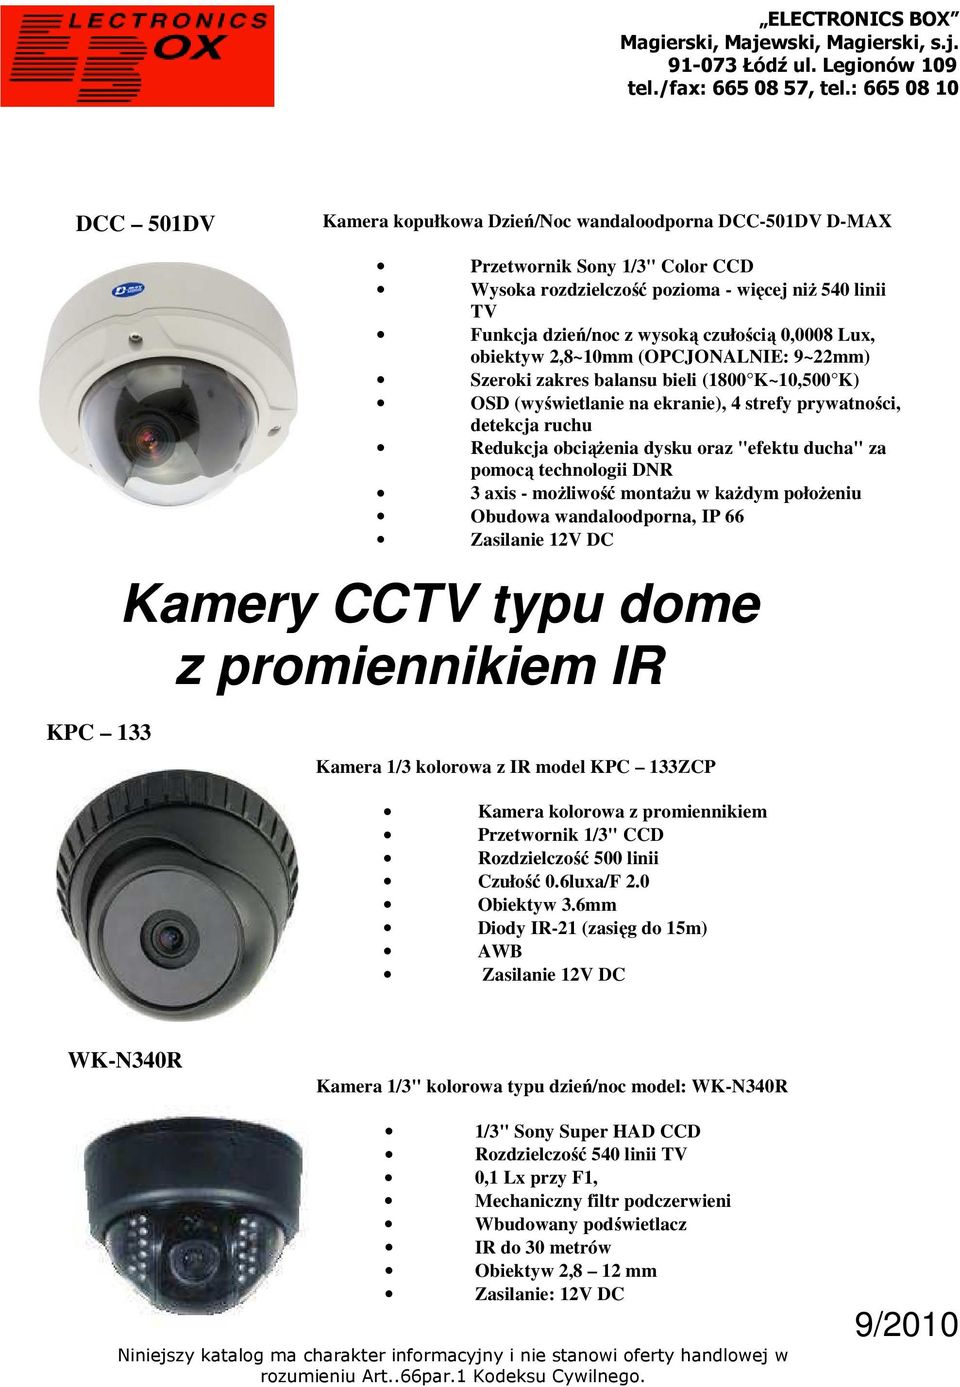 ducha" za pomocą technologii DNR 3 axis - możliwość montażu w każdym położeniu Obudowa wandaloodporna, IP 66 Zasilanie 12V DC Kamery CCTV typu dome z promiennikiem IR KPC 133 Kamera 1/3 kolorowa z IR